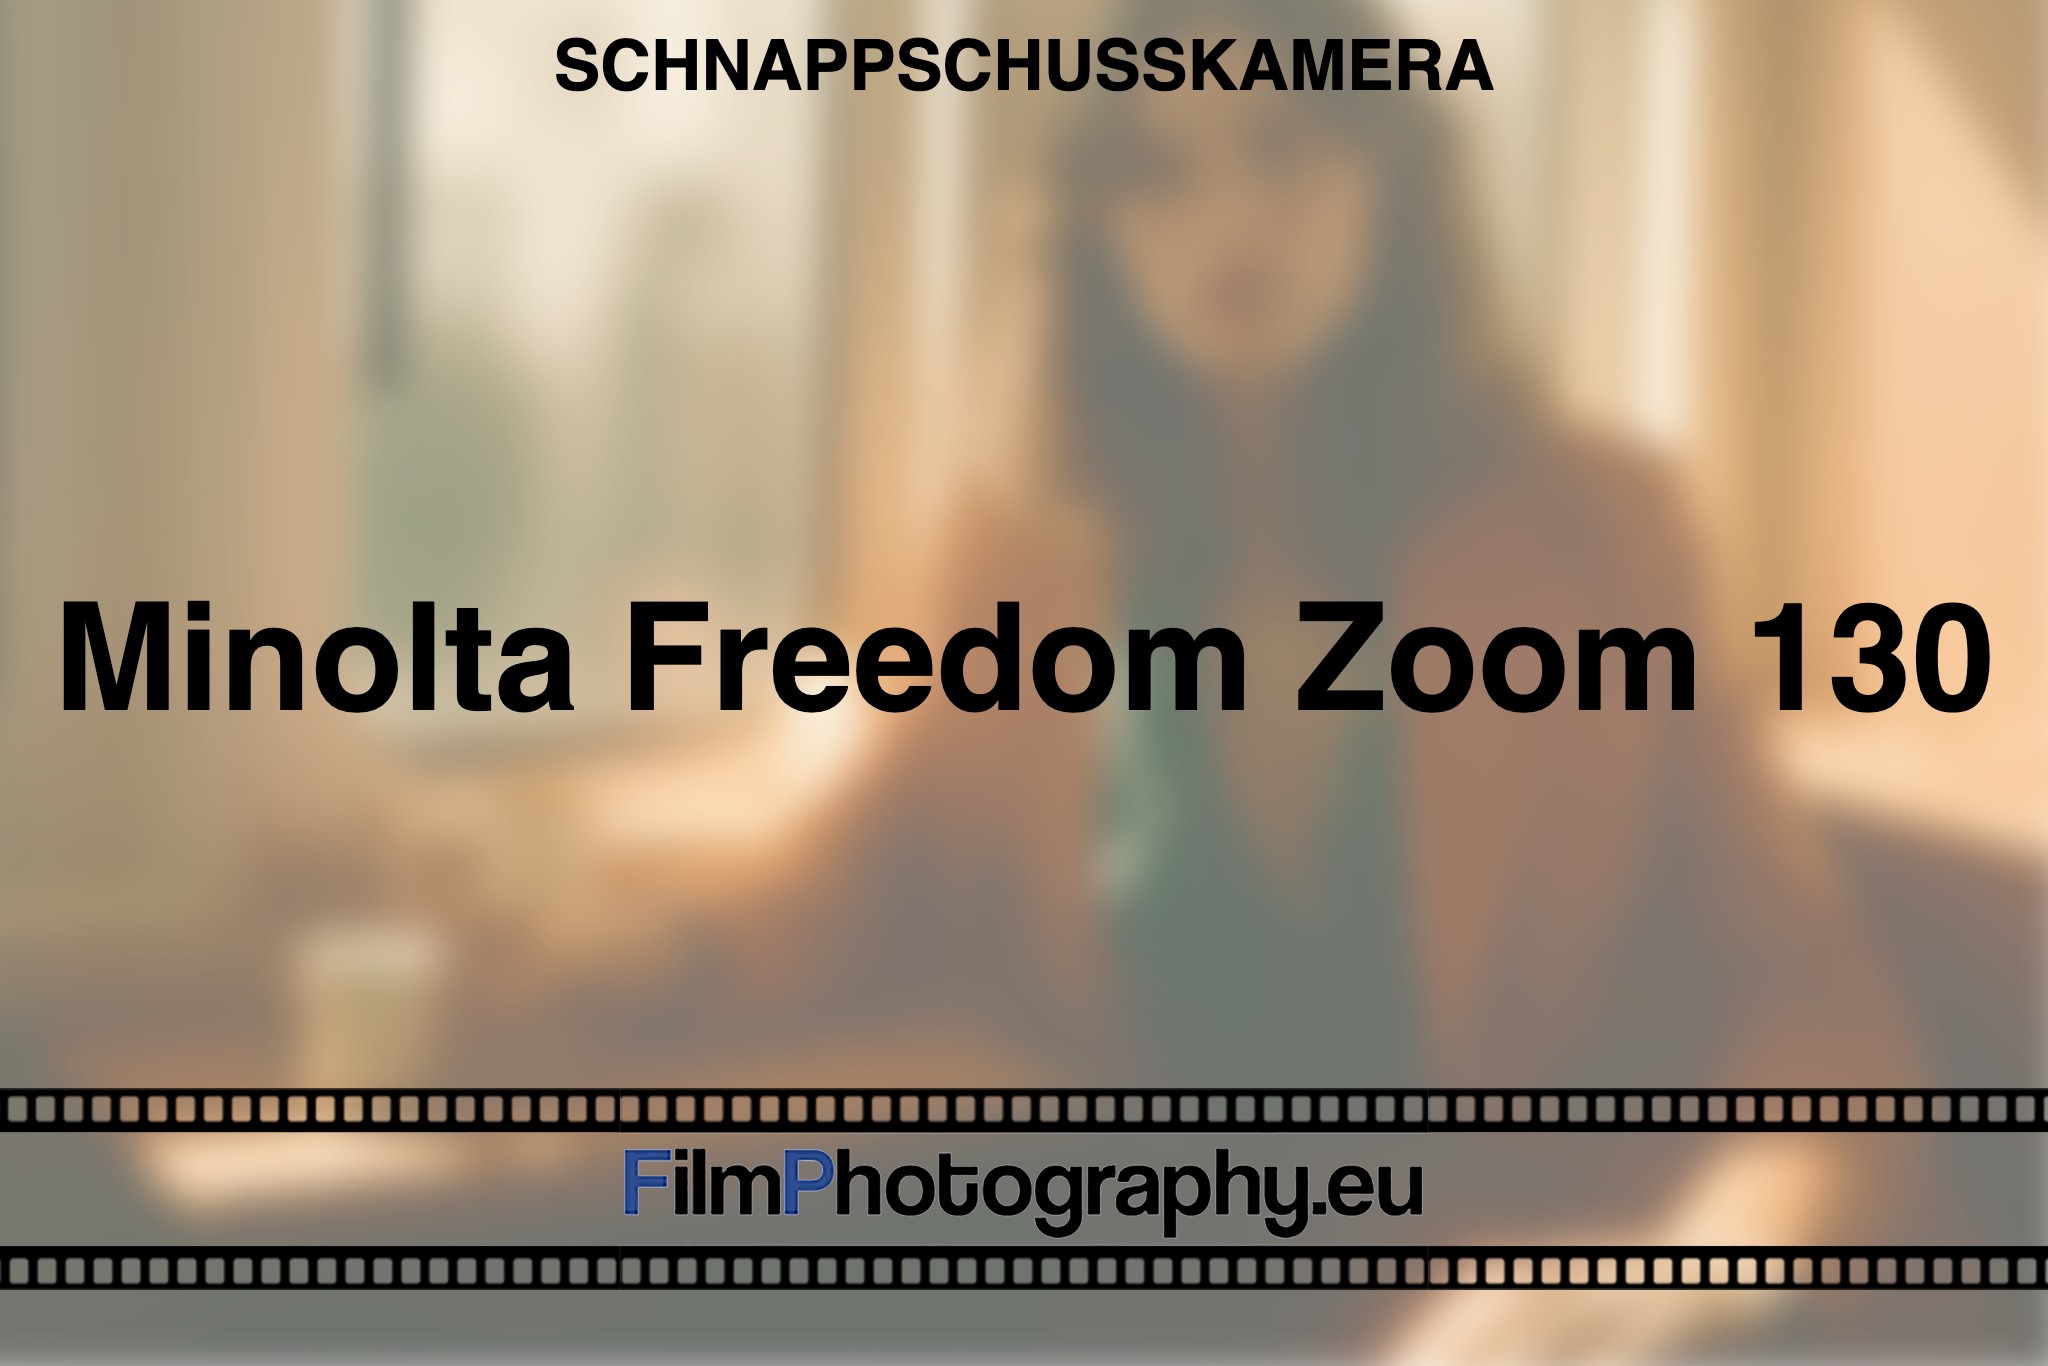 minolta-freedom-zoom-130-schnappschusskamera-bnv